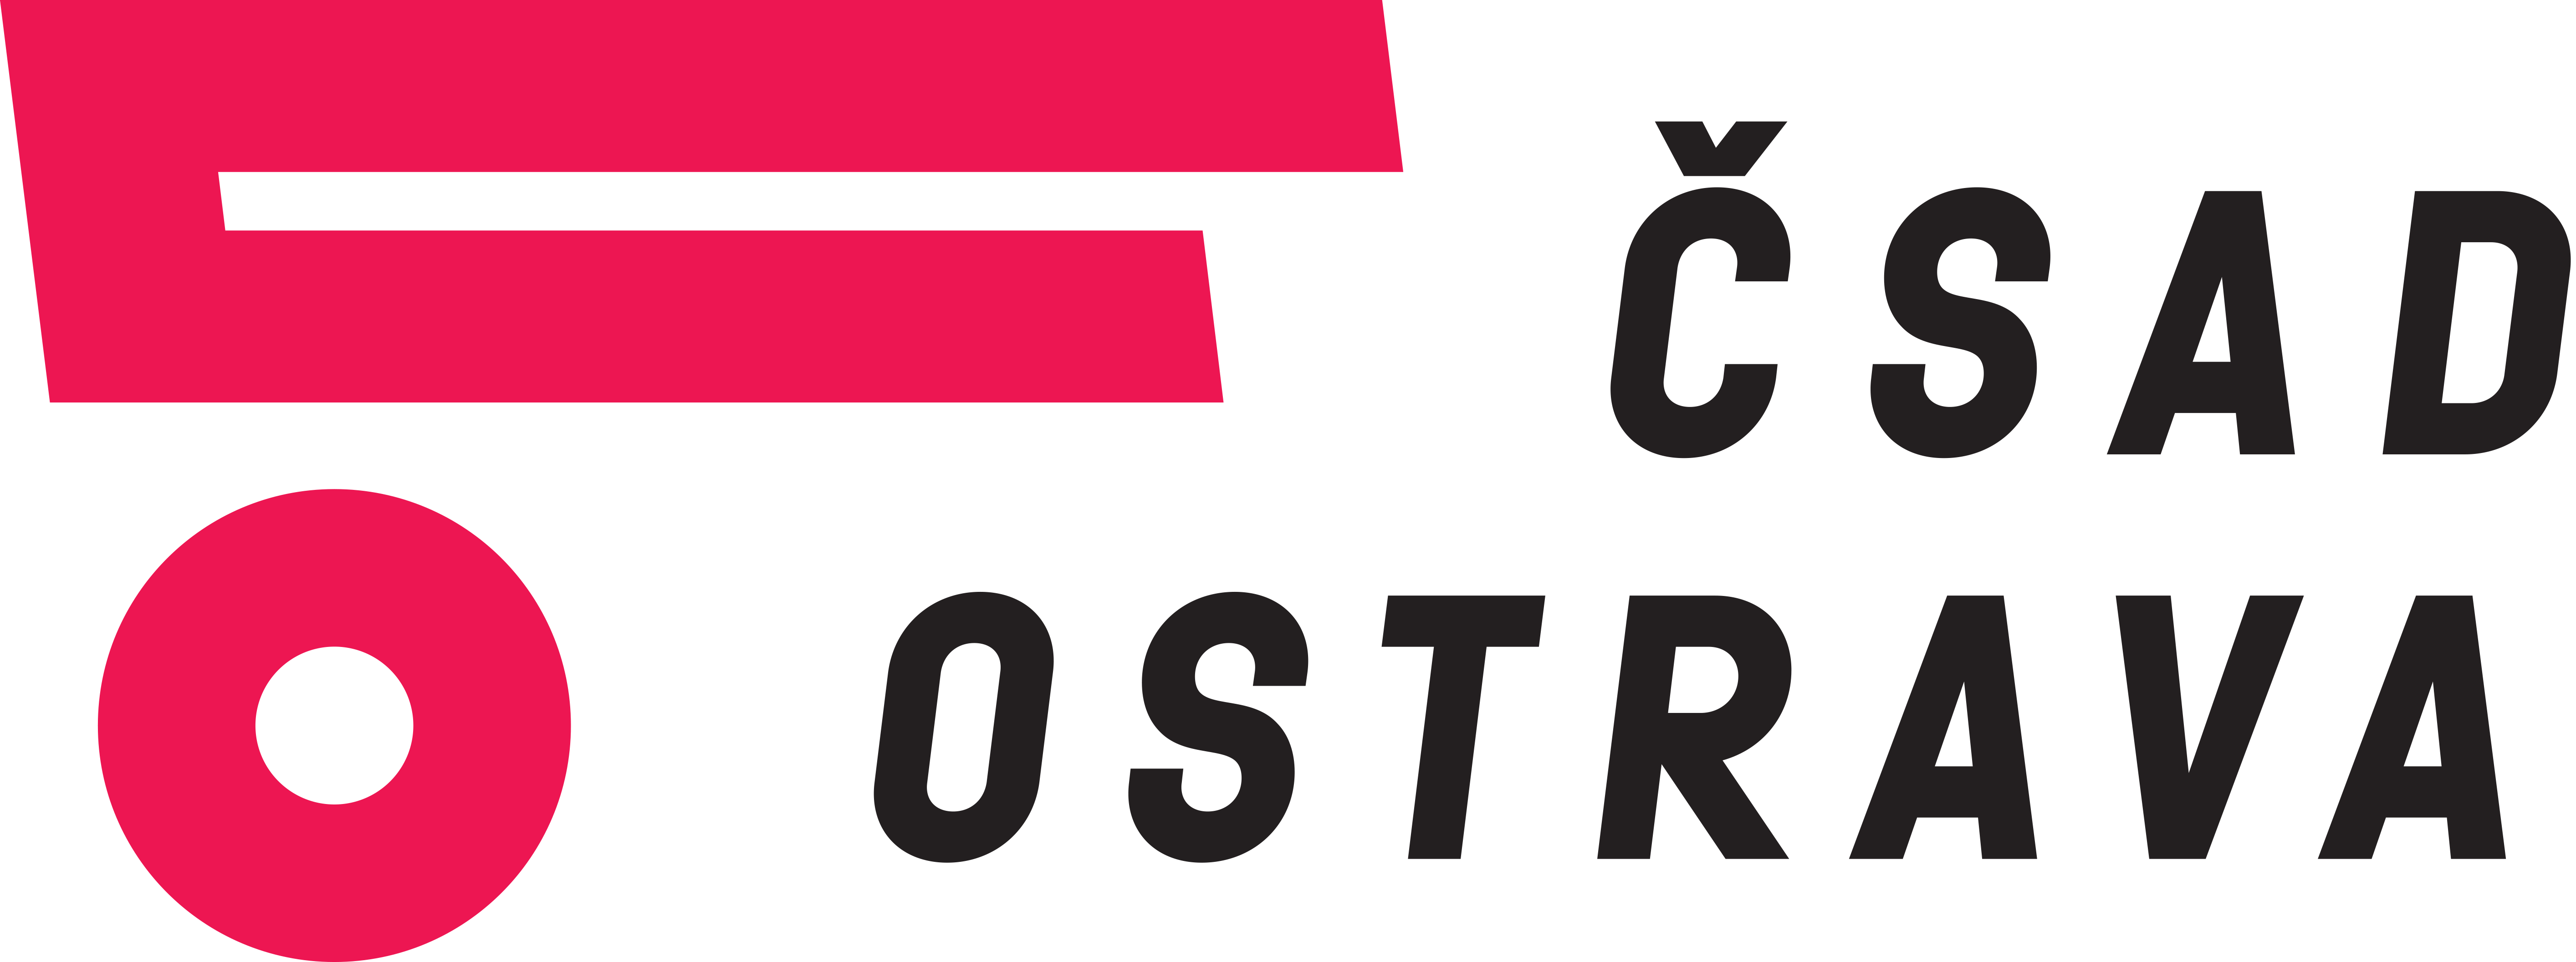 CSAD_Ostrava_logo_CMYK